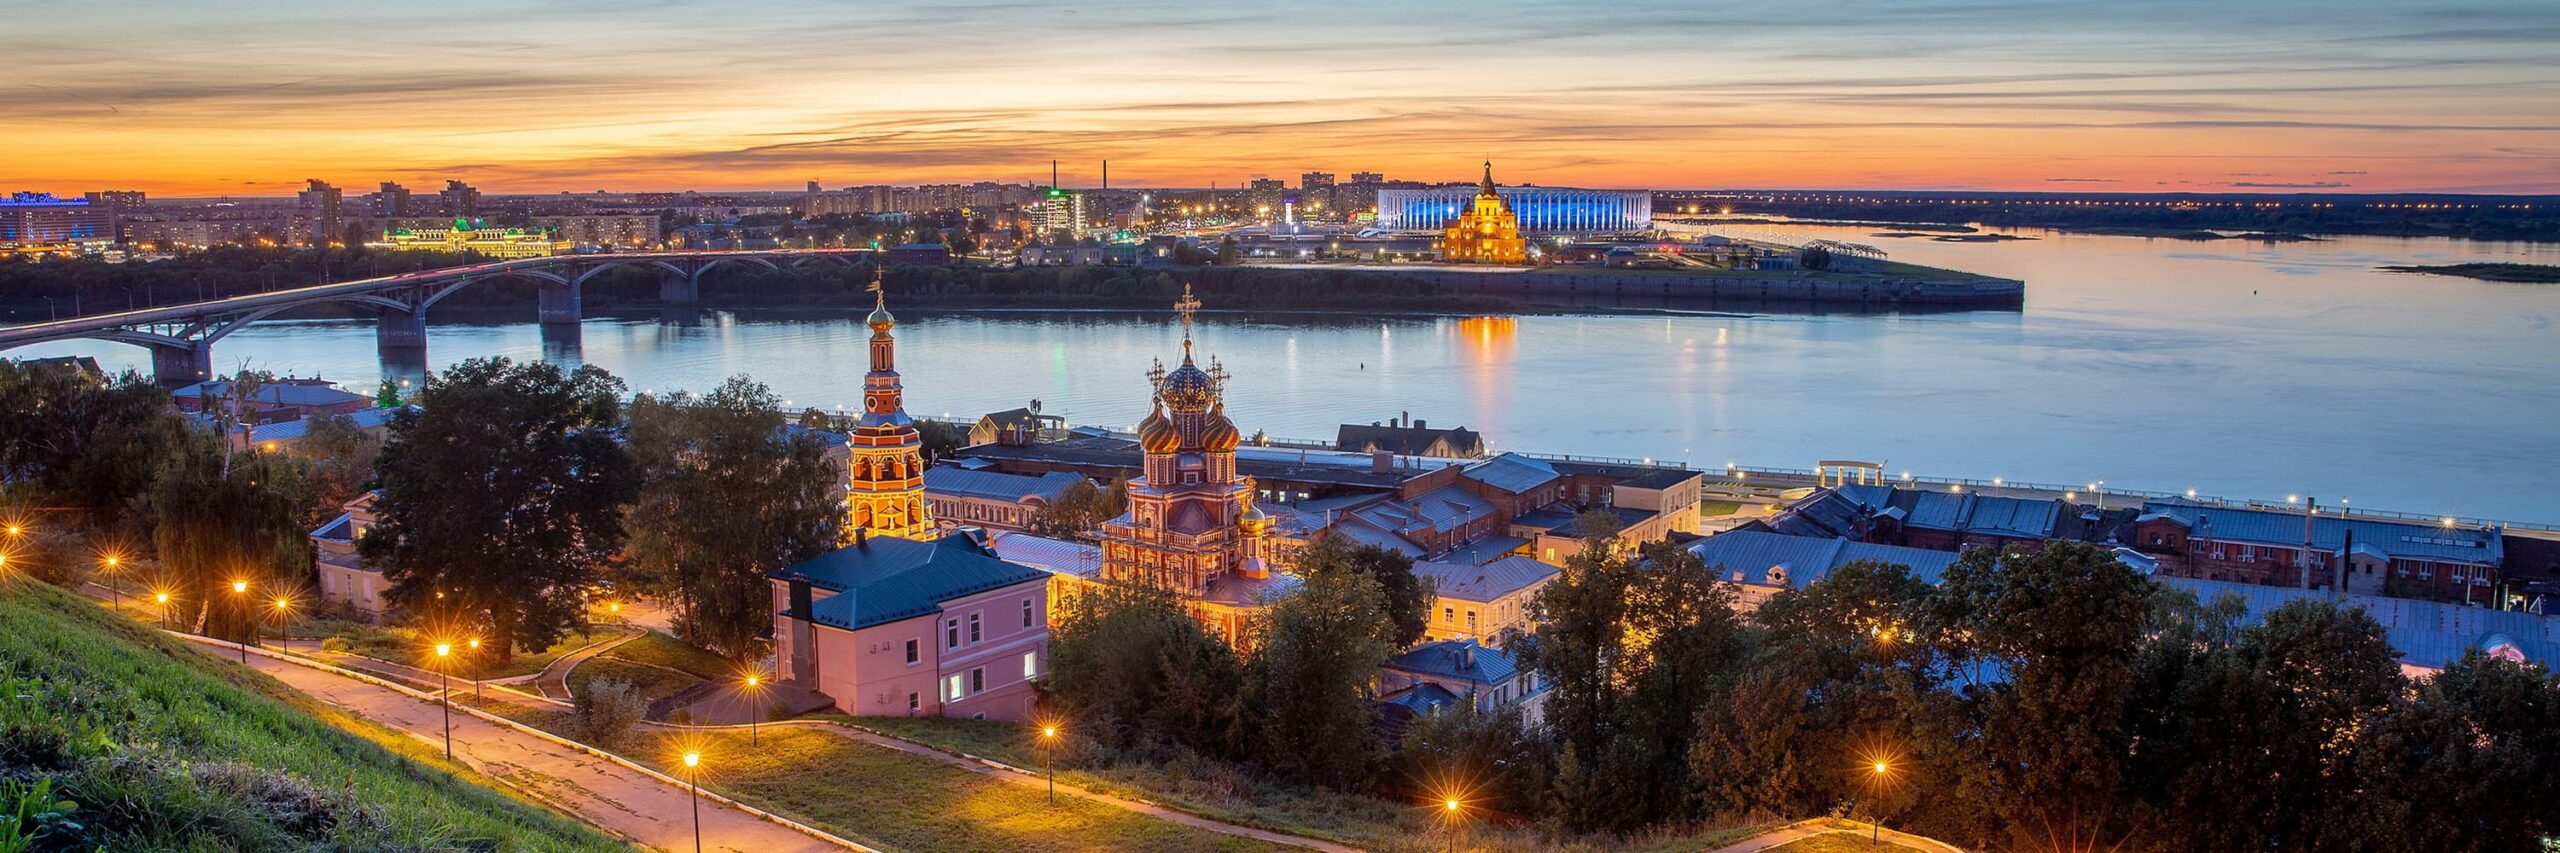 Что посмотреть в Нижнем Новгороде за 1 день